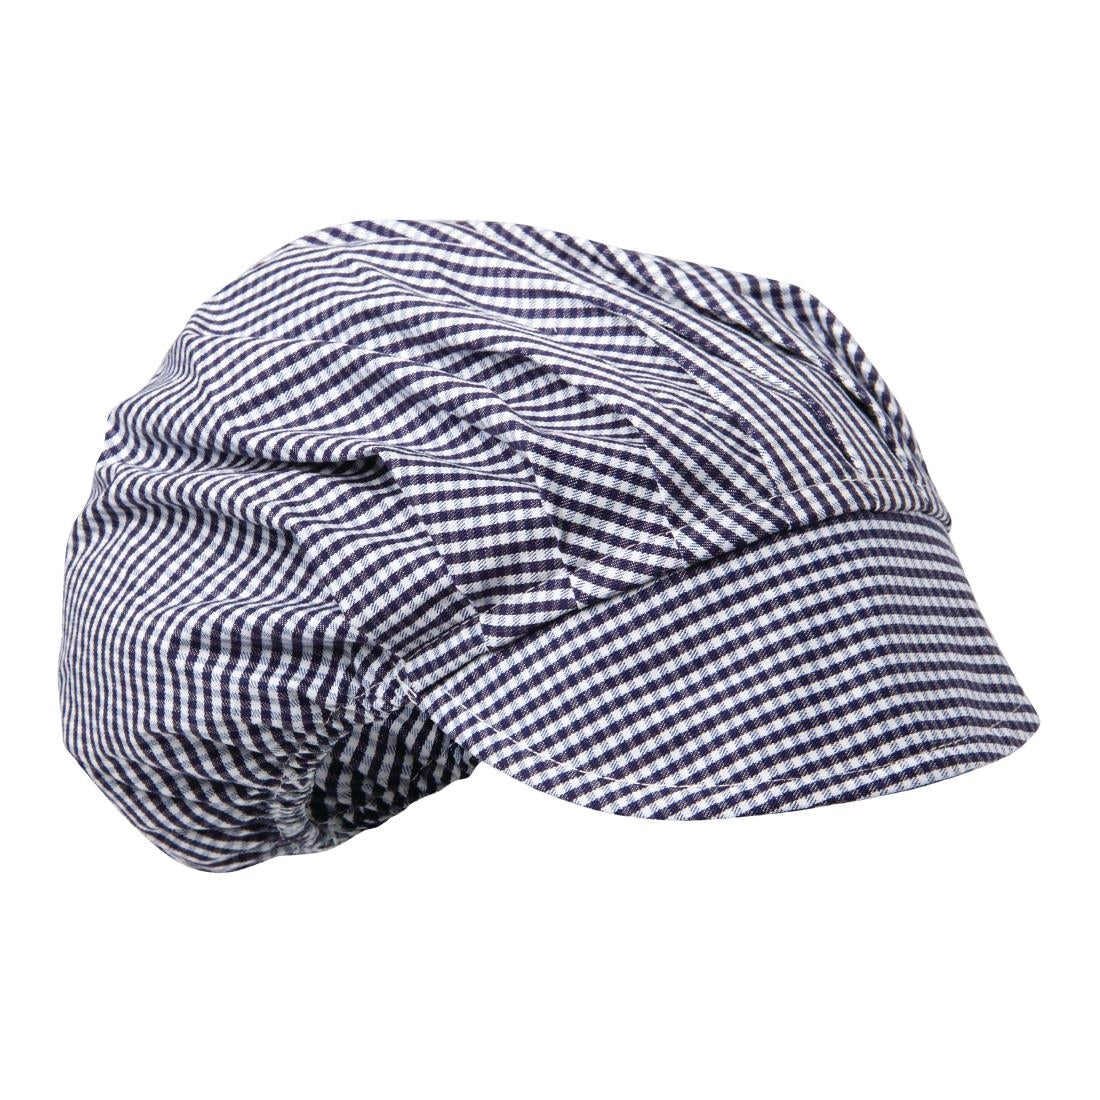 B257 Whites Peaked Unisex Hat